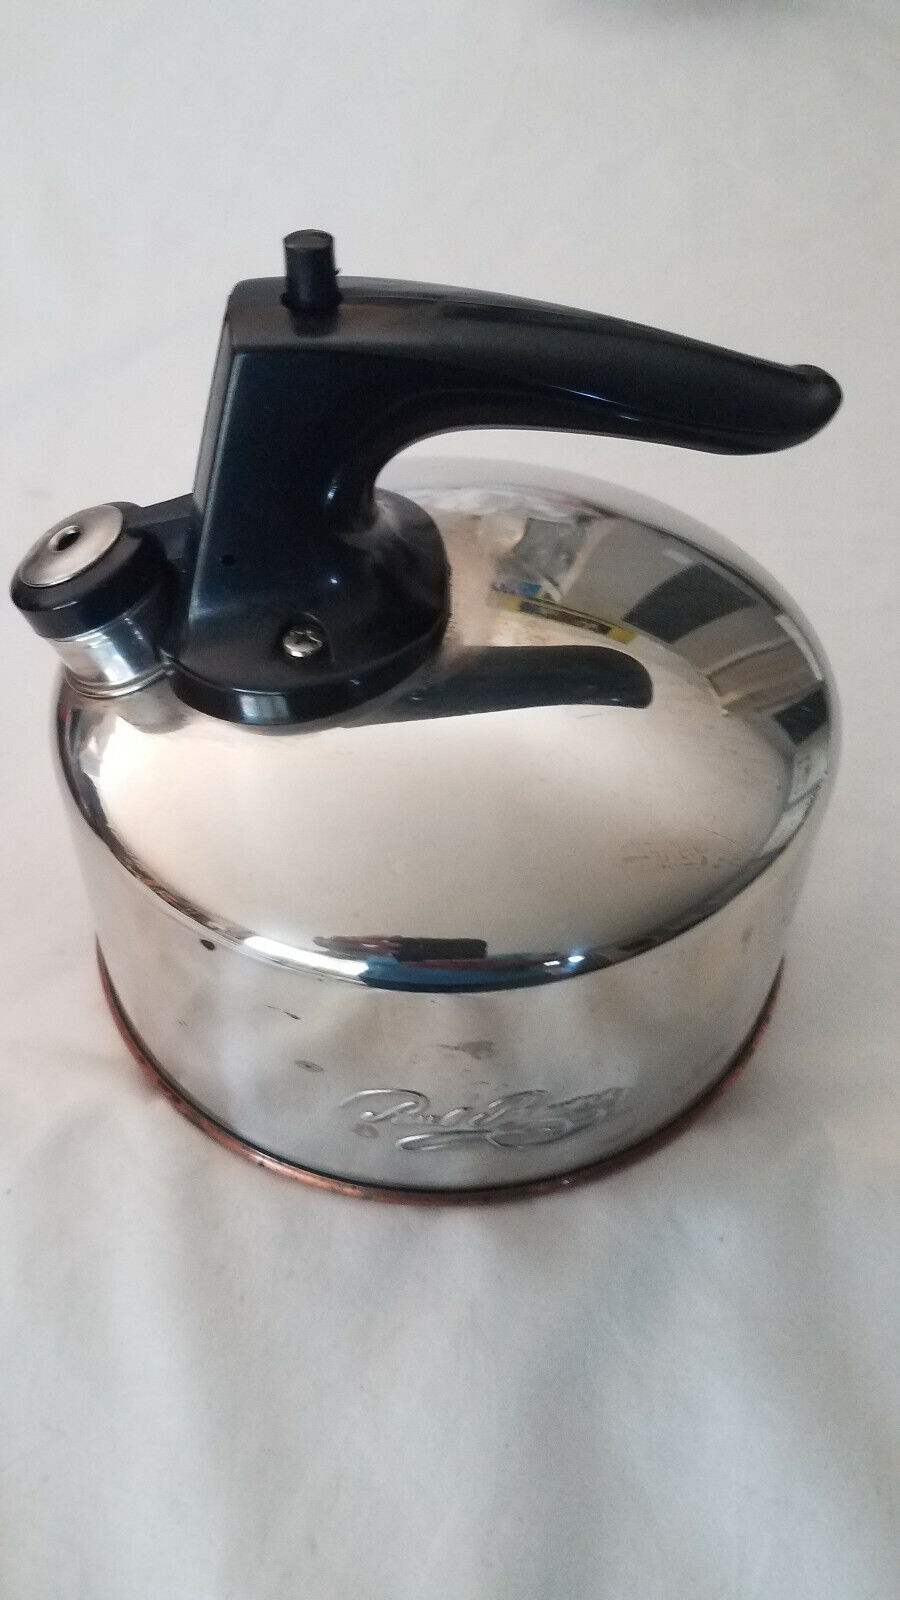 Vtg 1801 Revere Ware Whistling Tea Kettle Model KOREA G-99-C With Copper Bottom